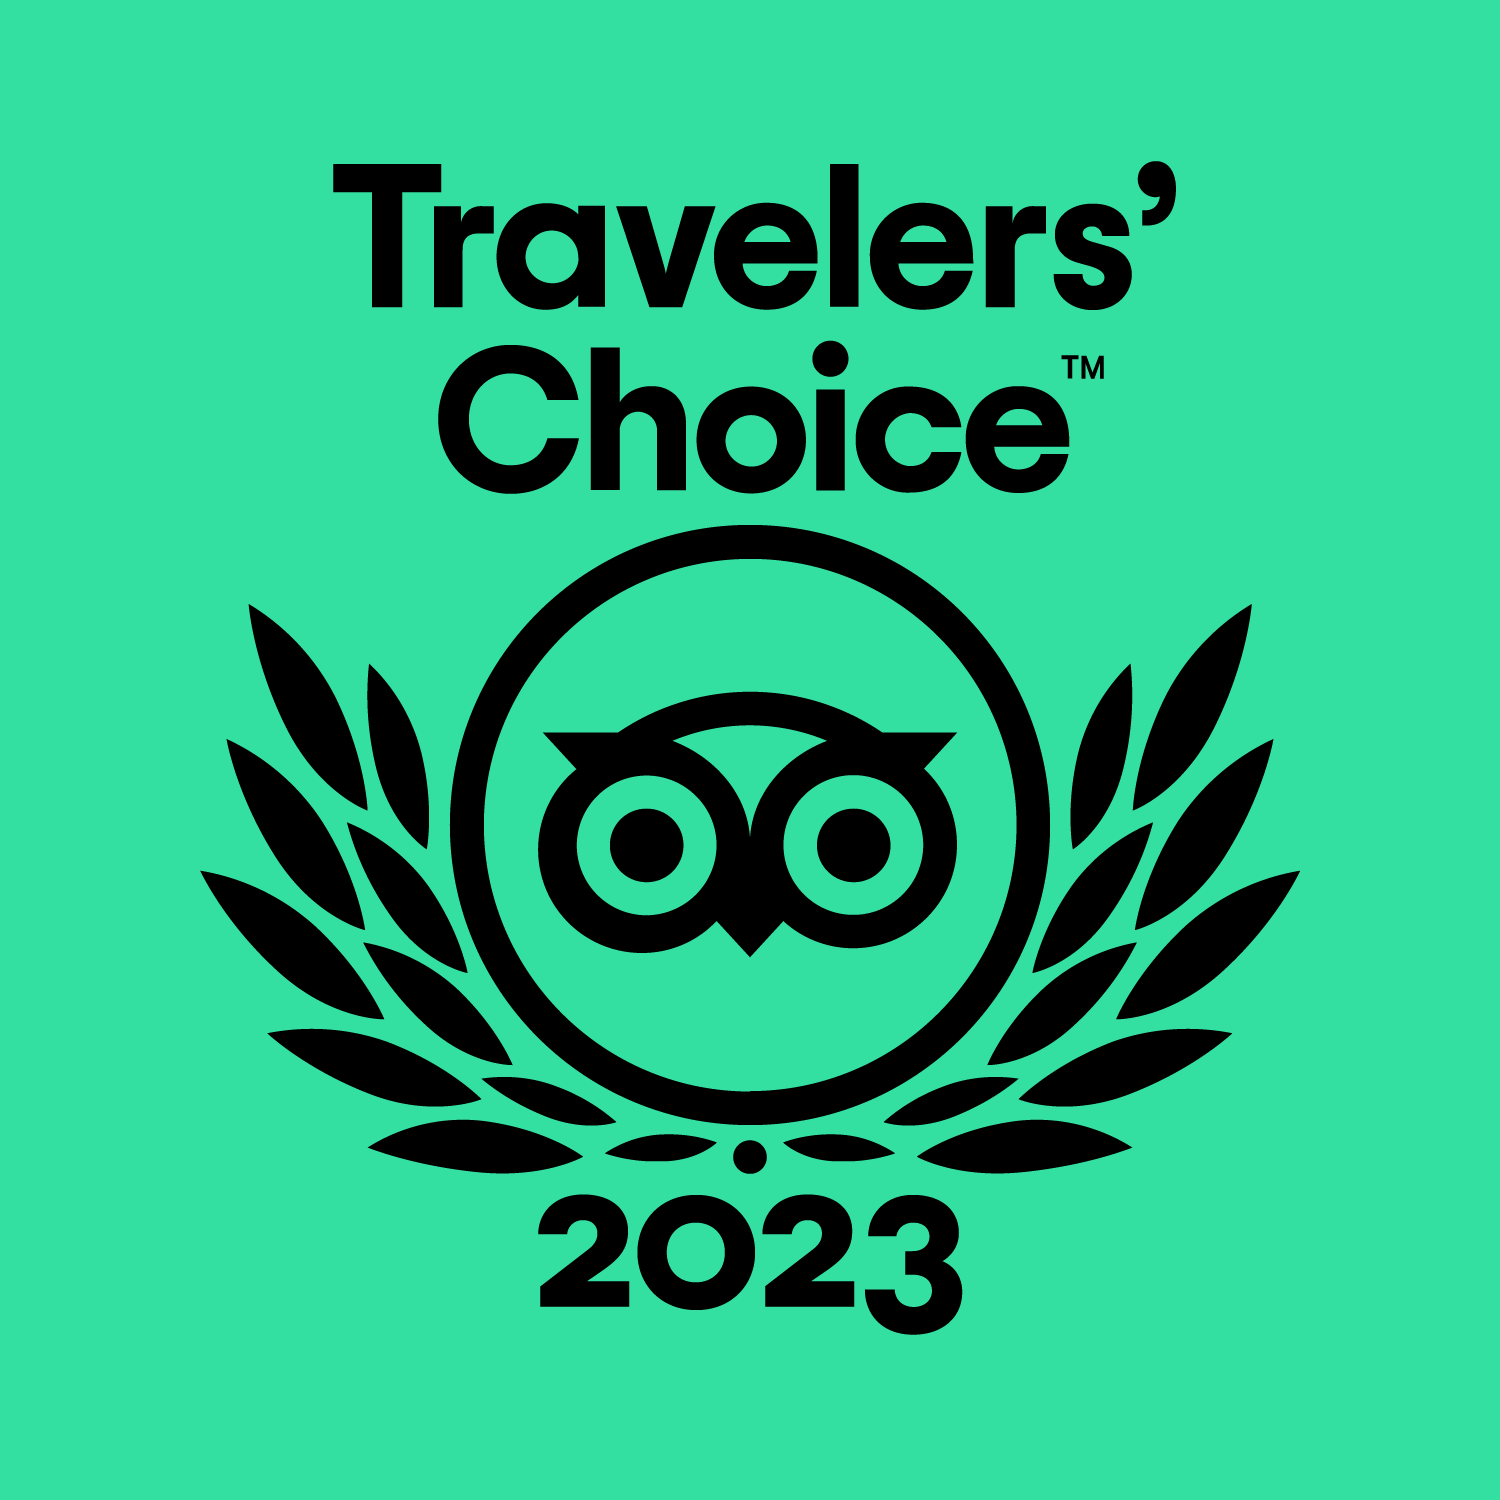  TripAdvisor 2021 Traveler's Choice